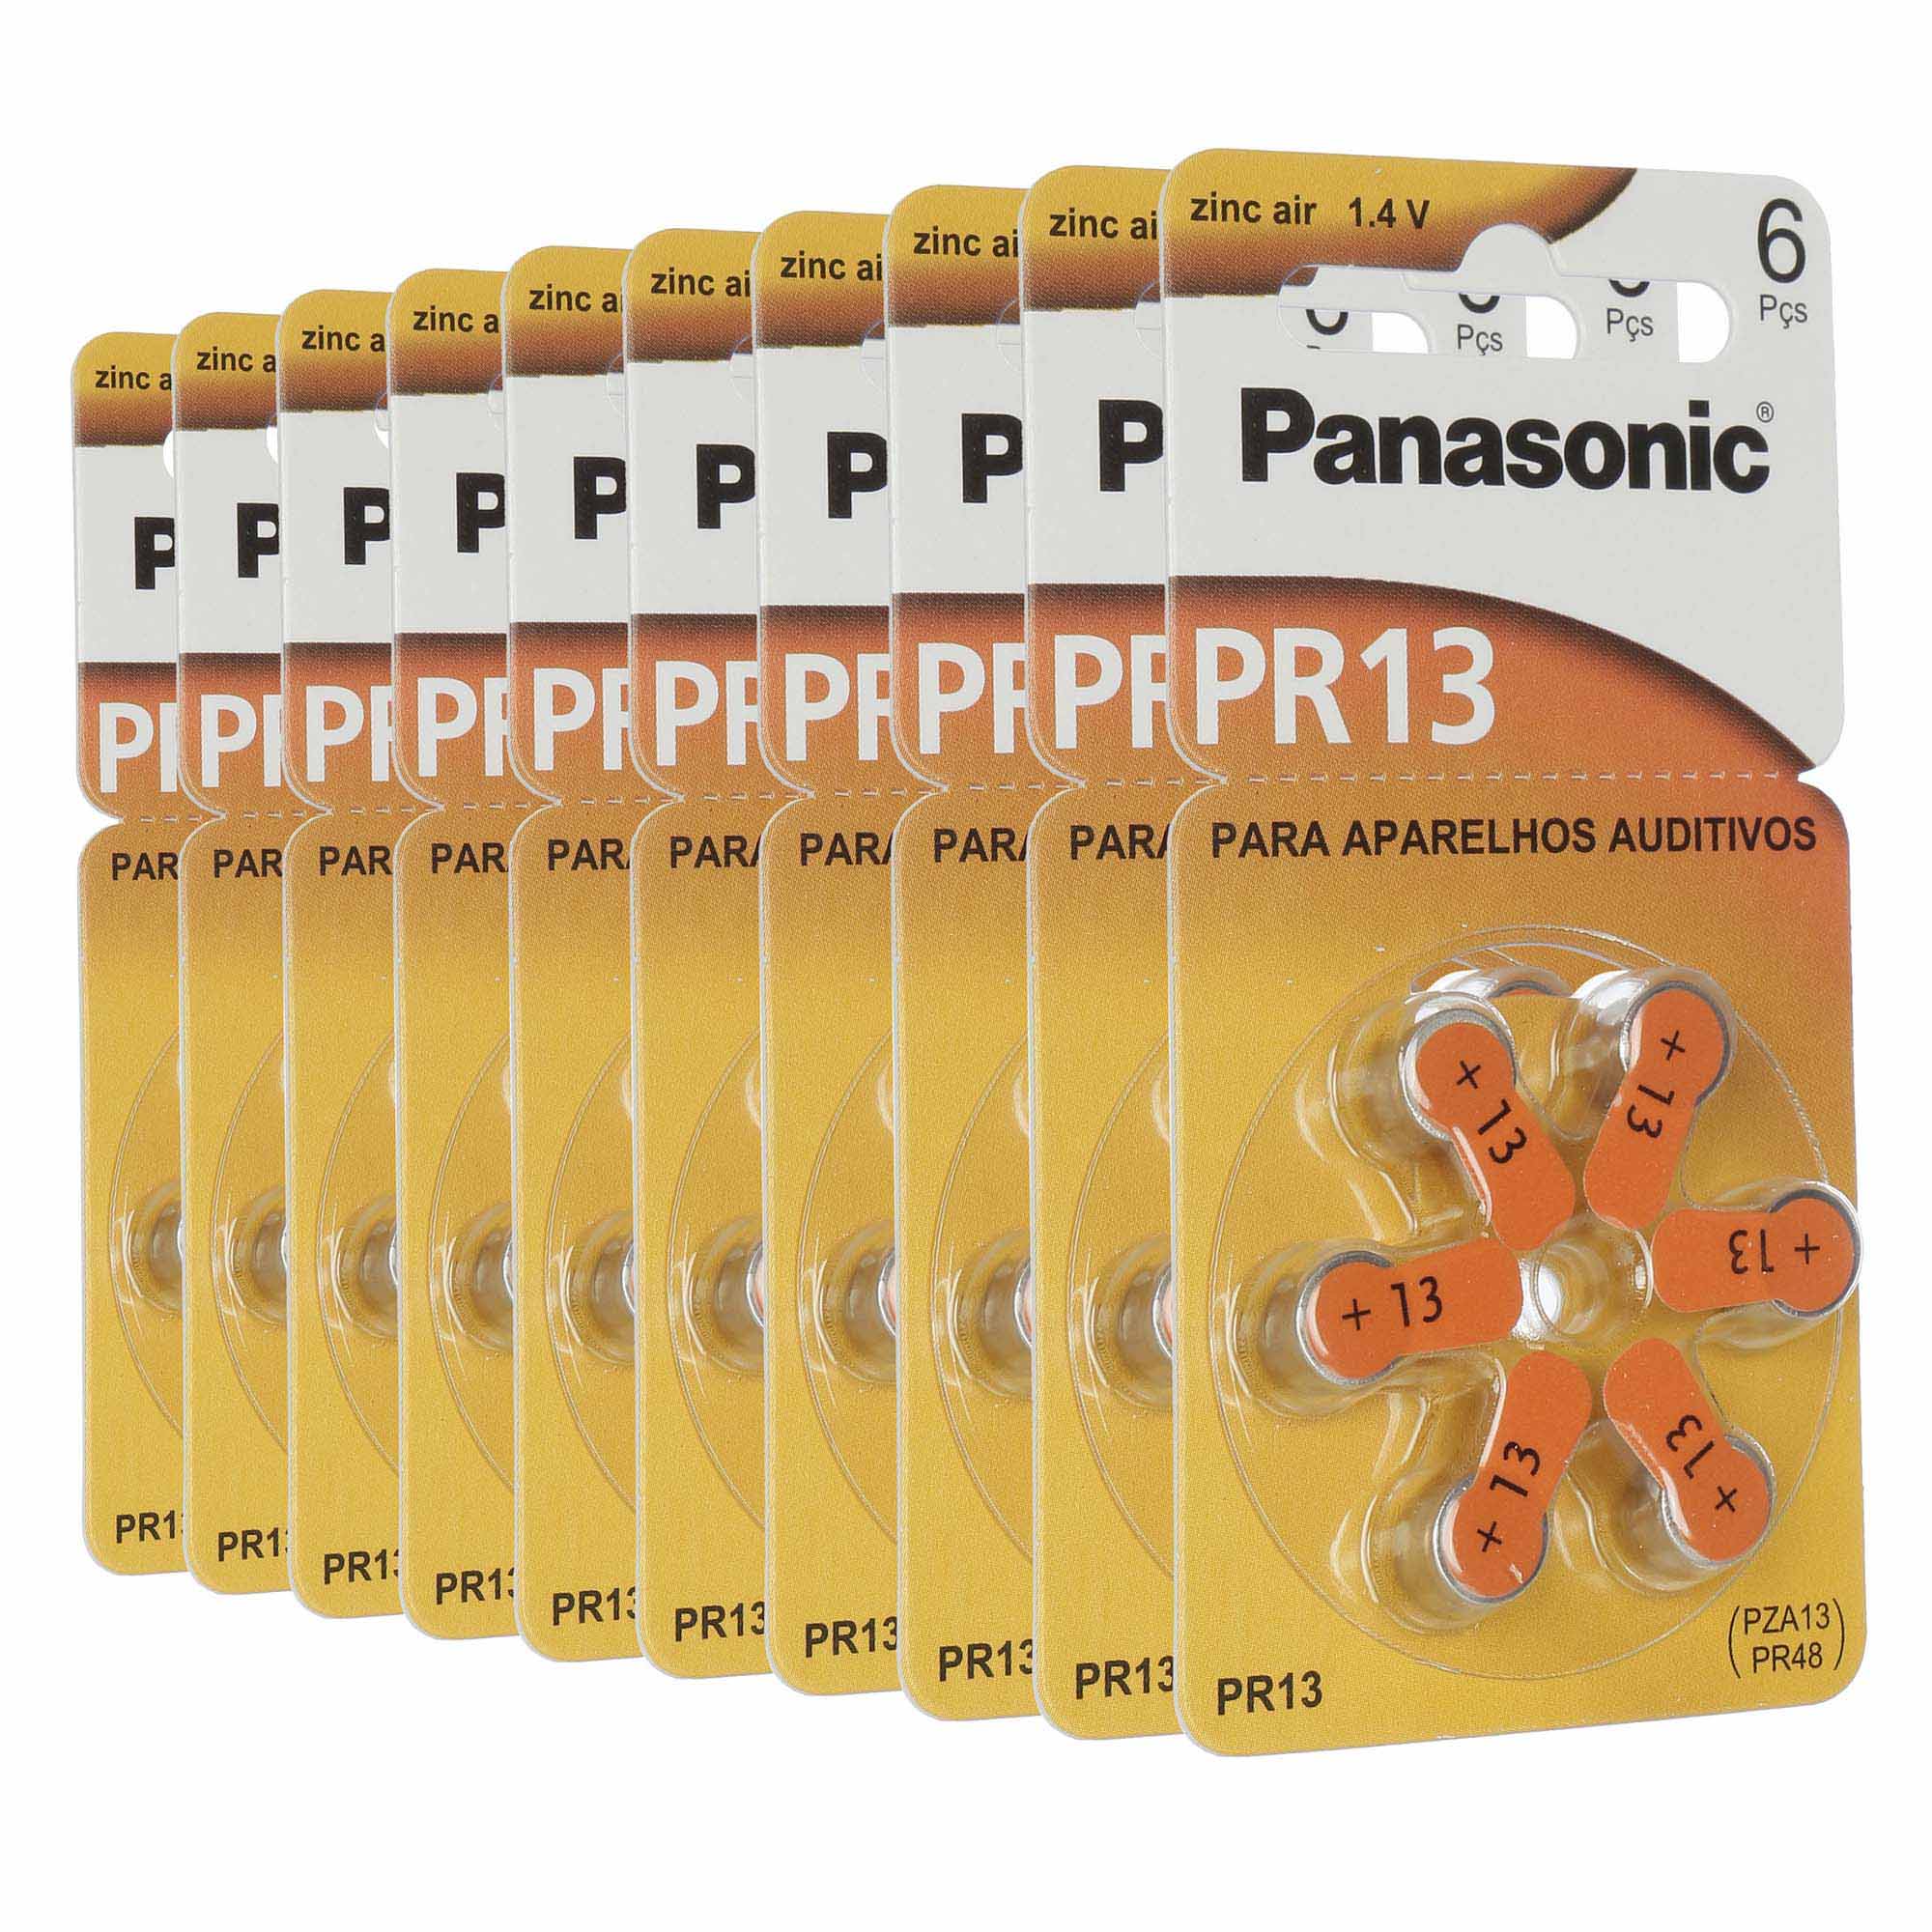 Panasonic PR13 / PR48  - 10 Cartelas - 60 Baterias para Aparelho Auditivo - SONORA